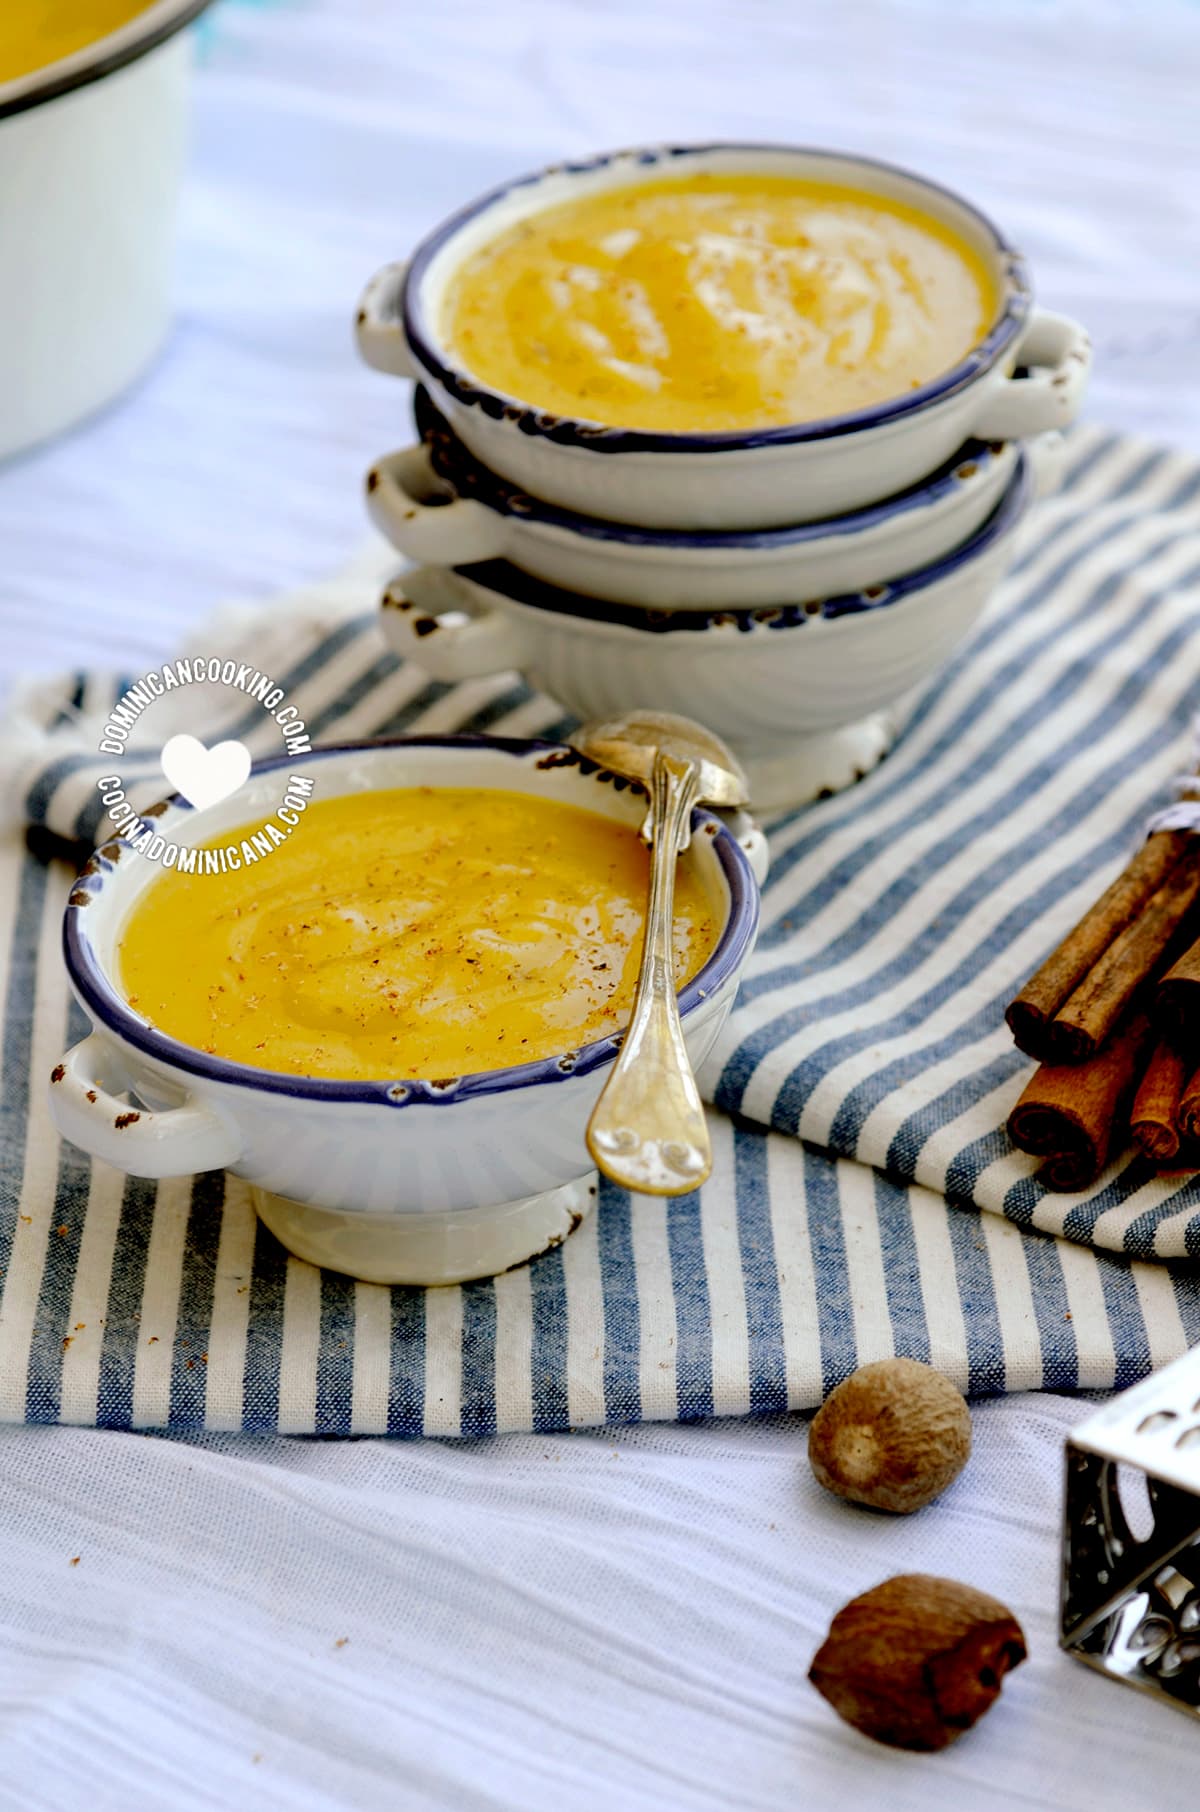 Majarete Video + recipe of a creamy, delightful corn pudding